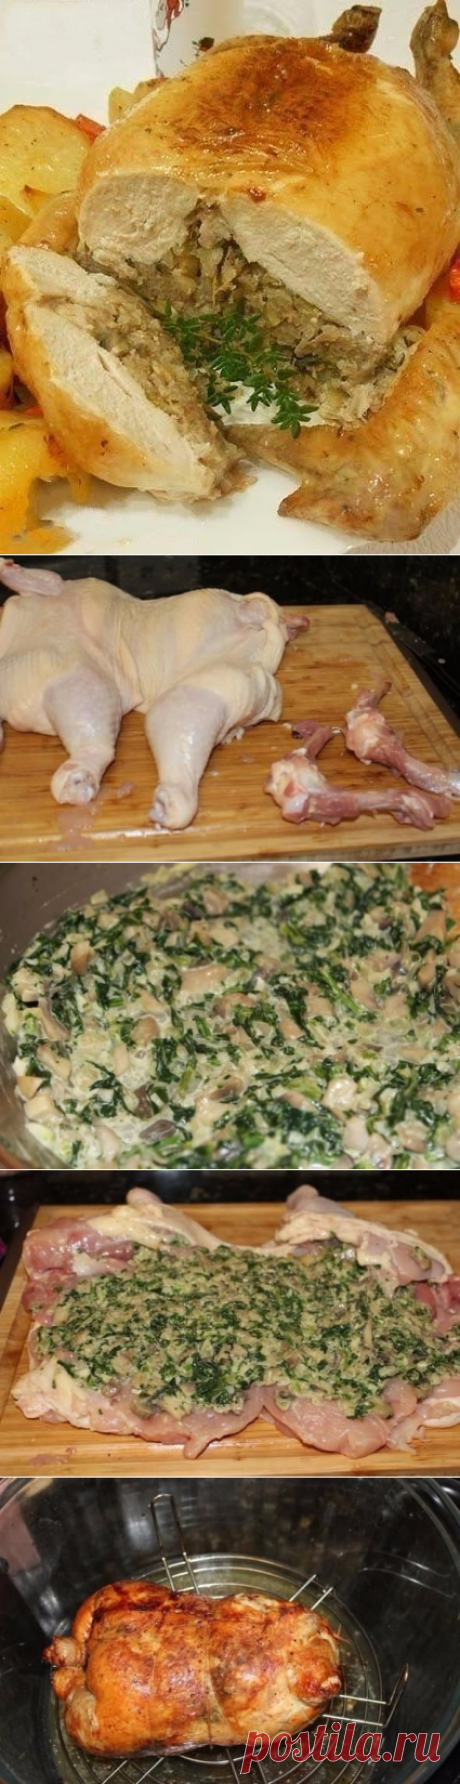 Как приготовить праздничная фаршированная курица без костей - рецепт, ингридиенты и фотографии